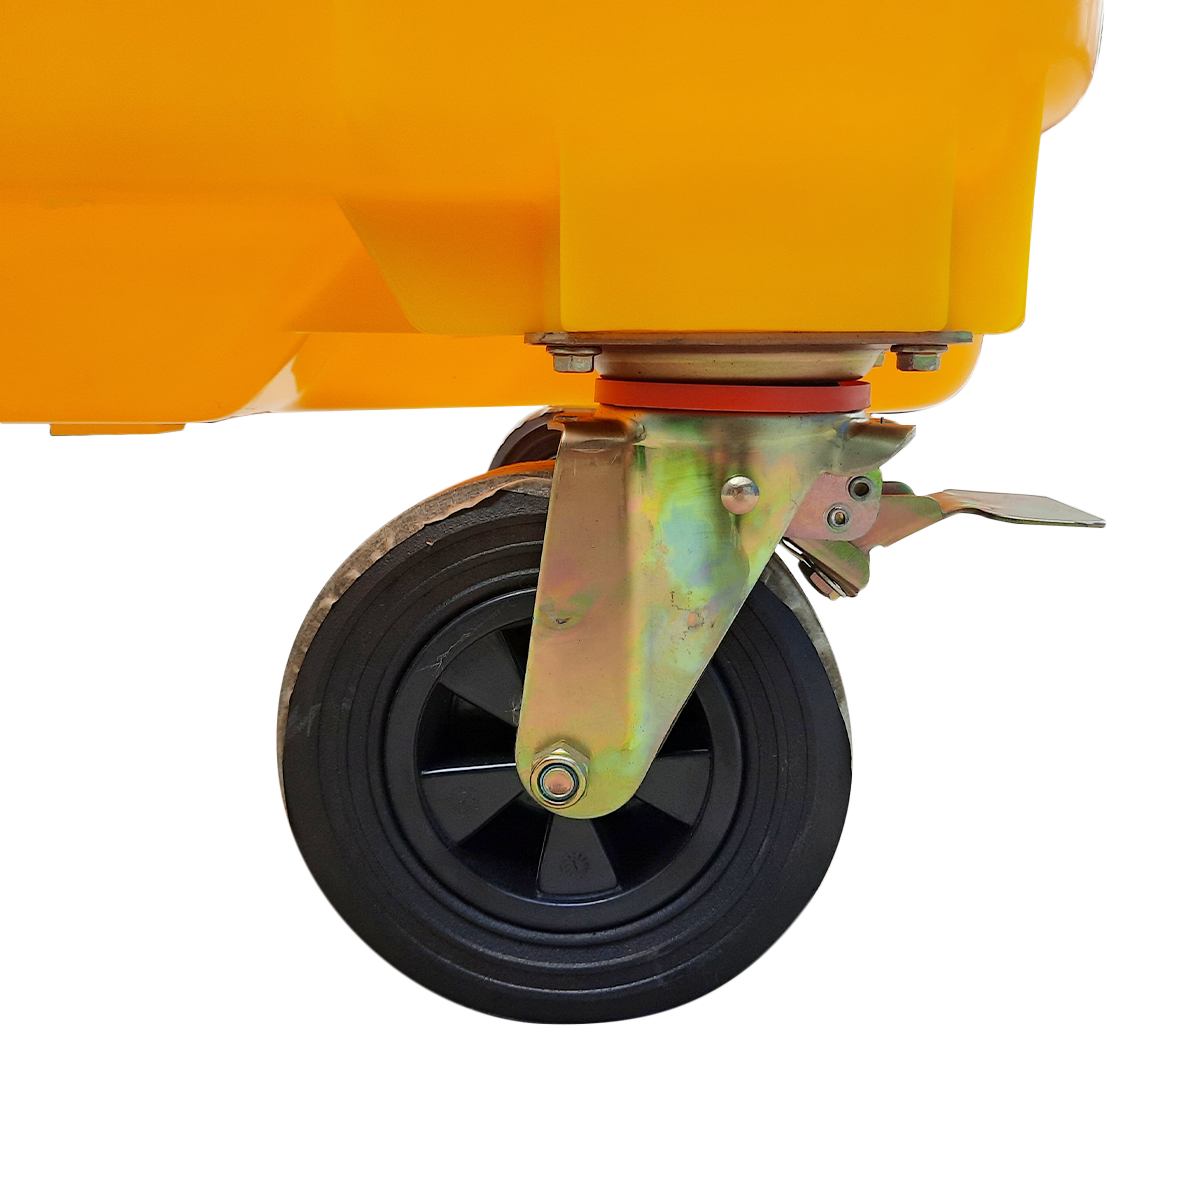 ถังขยะเทศบาลขนาดใหญ่ 660 ลิตร แบบมีหูเกี่ยว (Lazy Arm) สีเหลือง